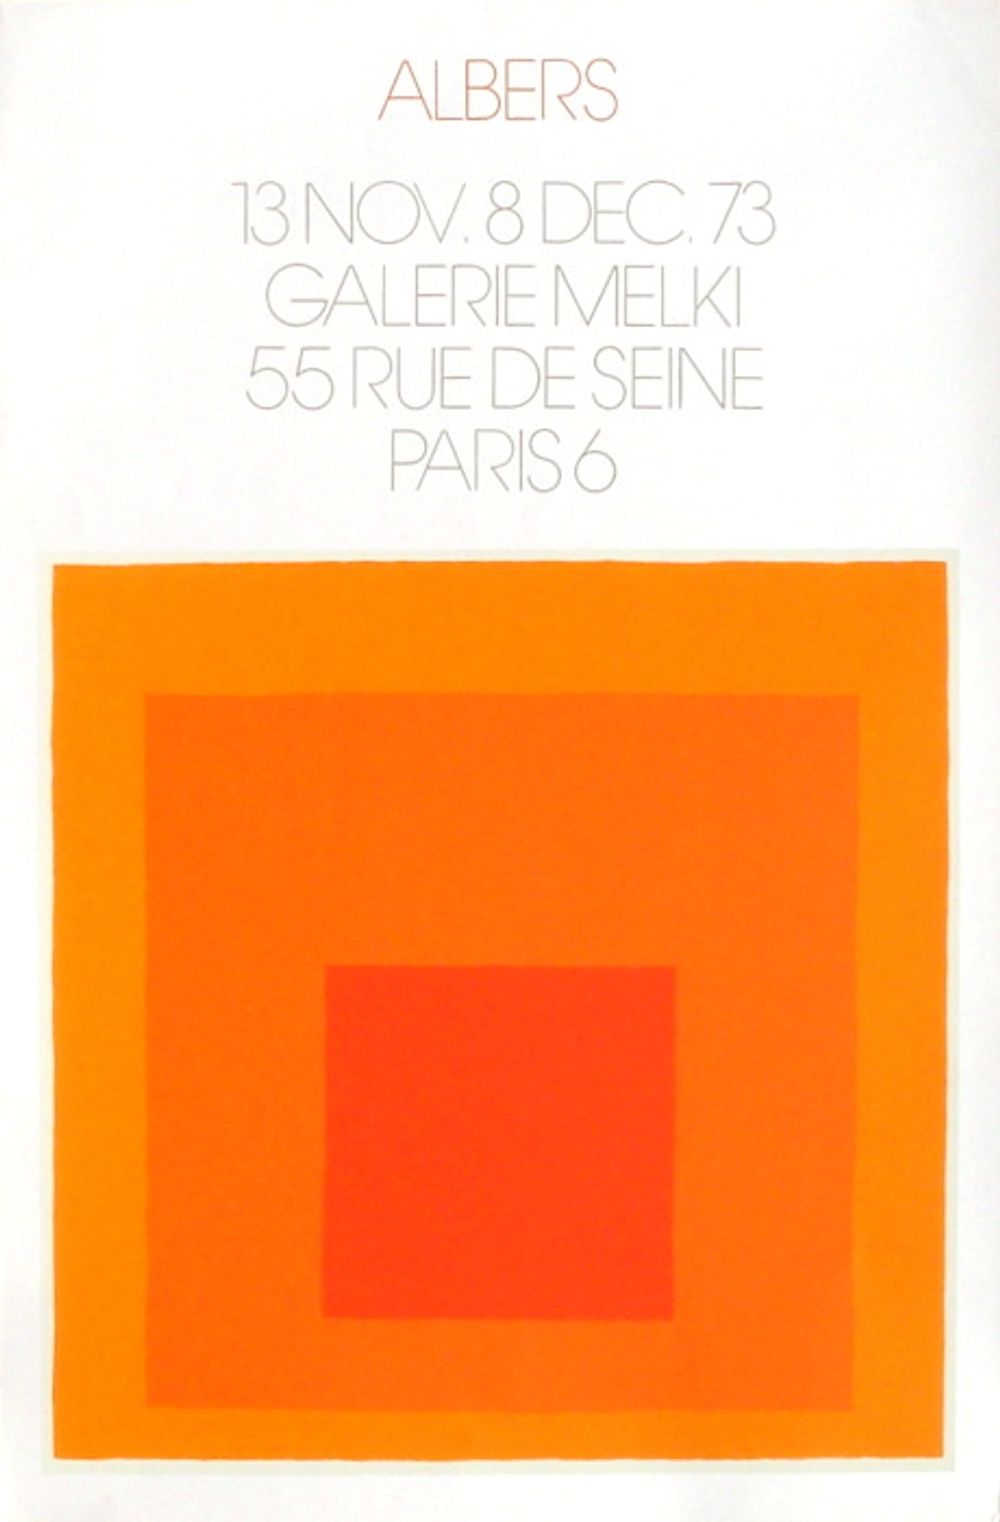 Expo 73 - Galerie Melki 1